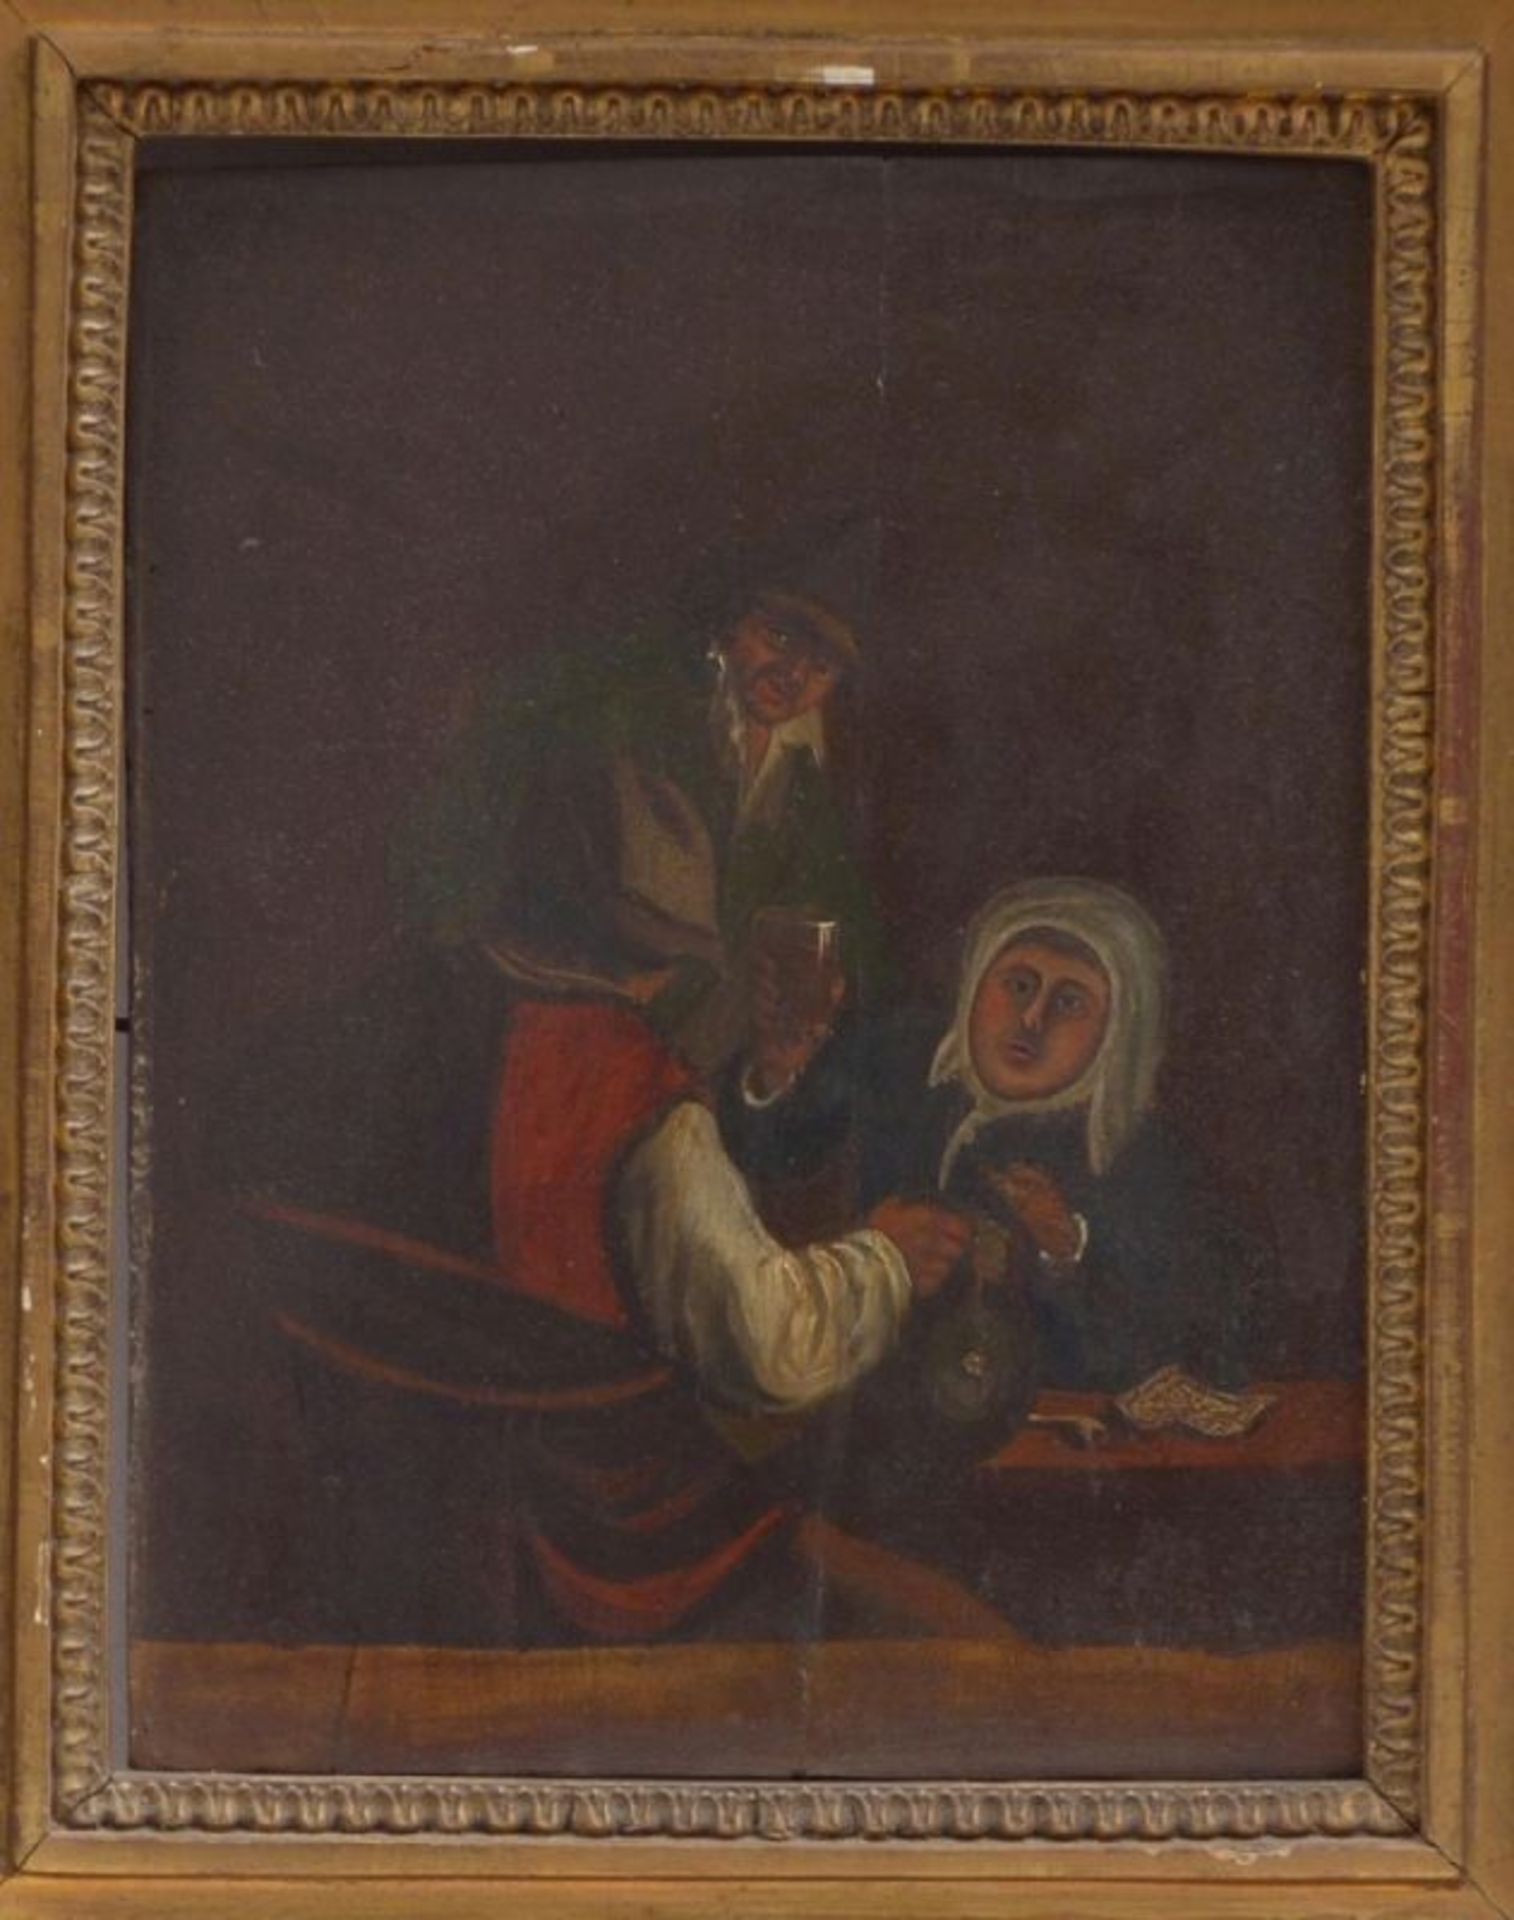 Unbekannter Maler des fr. 18. JahrhundertsDrei Zecher am WirtshaustischUm 1700. Öl/Holz. 25 x 20,3 - Bild 4 aus 4